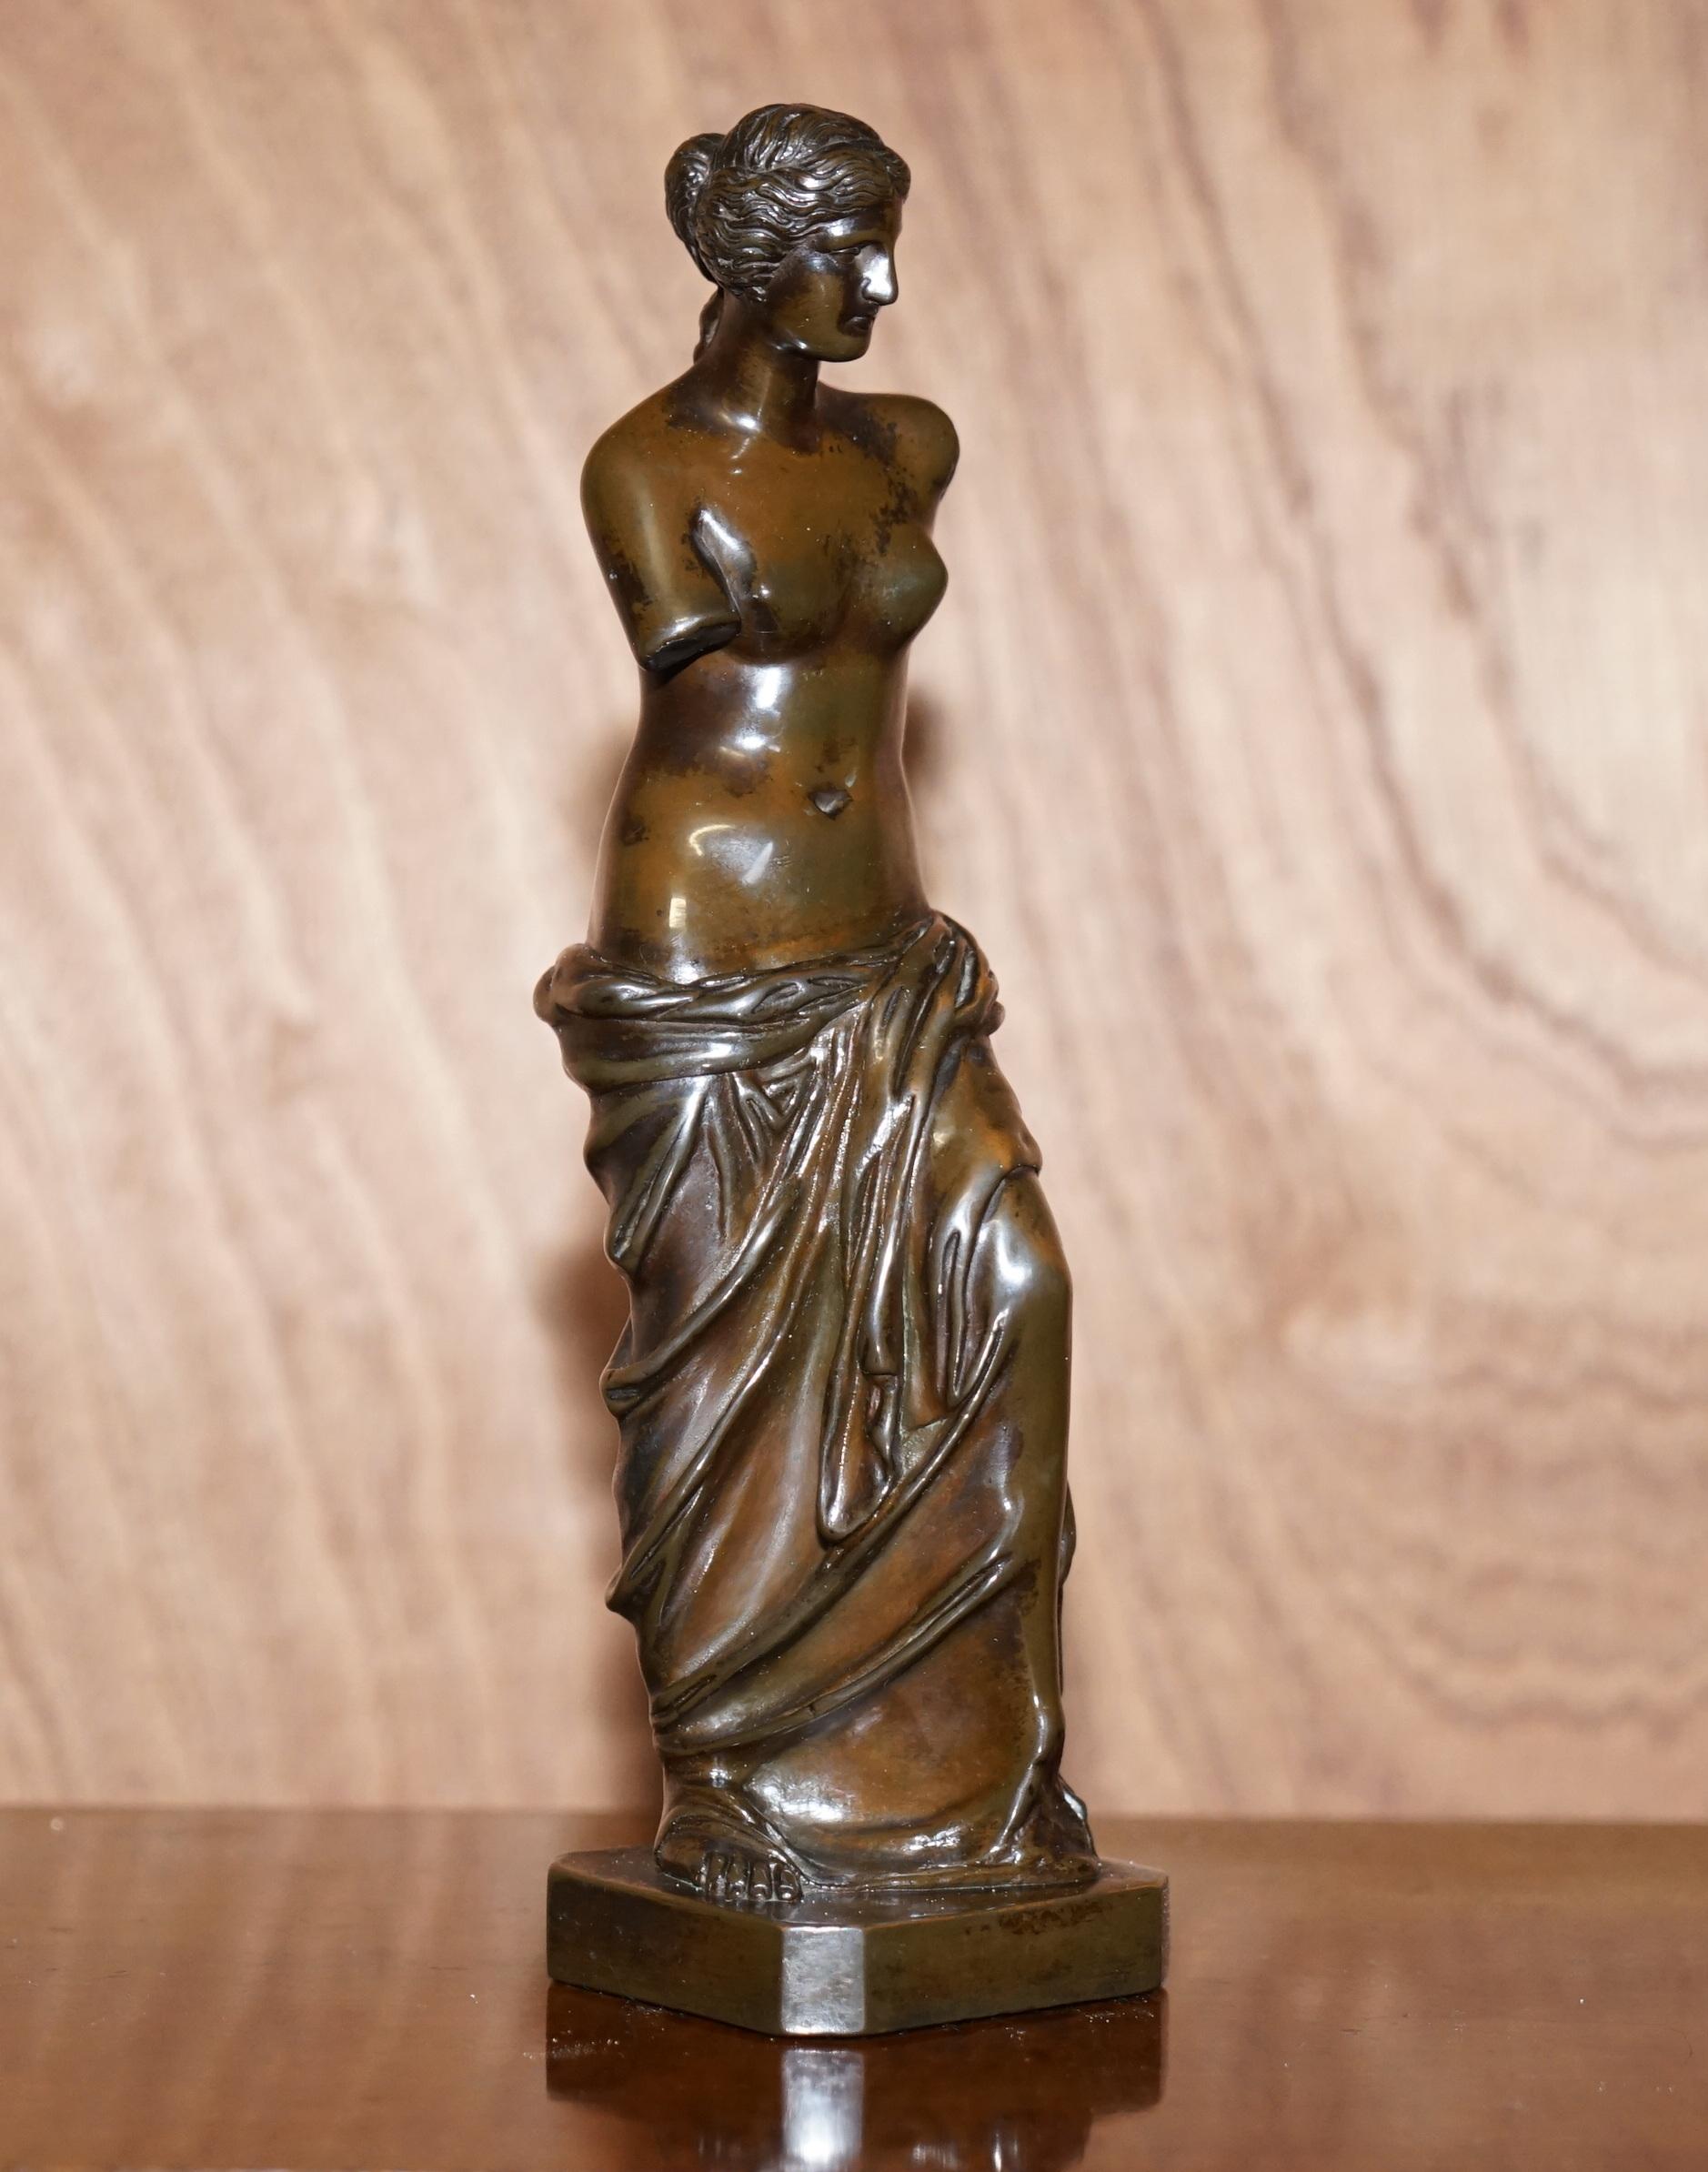 Wir freuen uns, diese beeindruckende Venus De Milo-Statue aus dem späten 19. Jahrhundert zum Verkauf anbieten zu können 

Ein sehr gut aussehendes und dekoratives Stück, das in jeder Umgebung teuer und wichtig aussieht

Diese Stücke wurden von